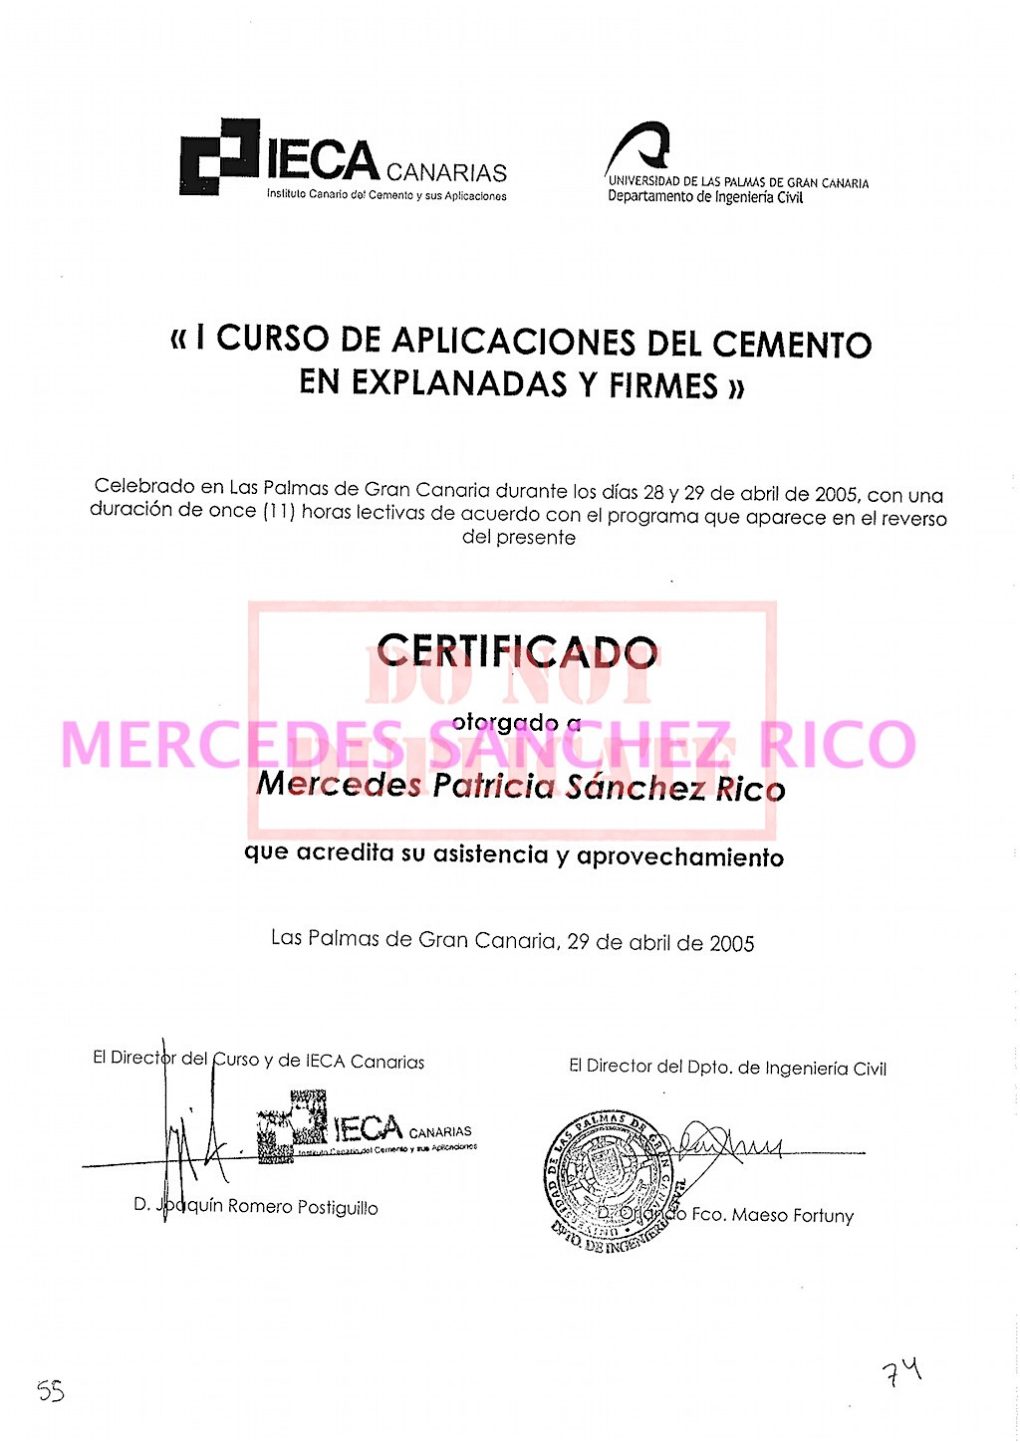 Diploma de "Acción Formativa Desarrollo de Líderes" de  Mercedes Sánchez Rico. Ingeniero Civil – Las Palmas de Gran Canaria. @mercedesitop